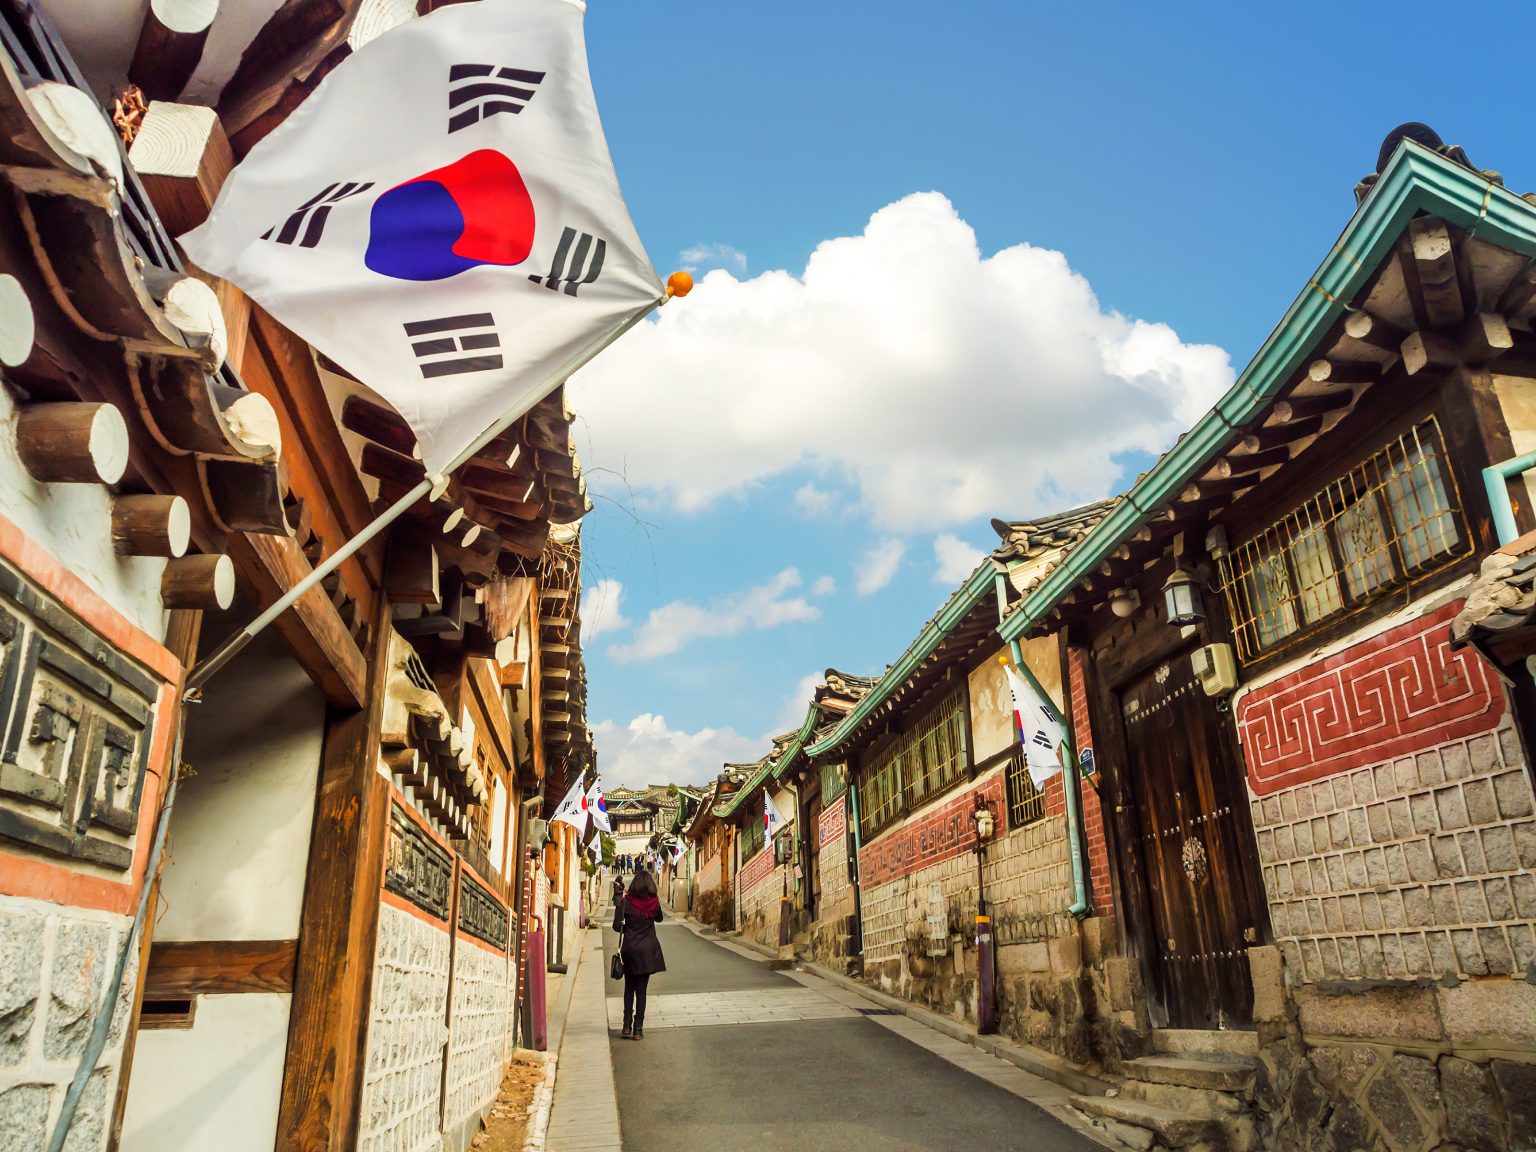 Hộ chiếu Hàn Quốc và du lịch: Tìm hiểu thêm về hộ chiếu Hàn Quốc và cách thức du lịch đến đất nước này để có trải nghiệm tuyệt vời nhất. Từ thành phố Seoul sôi động đến các thị trấn yên bình ở vùng quê, Hàn Quốc mang đến nhiều lựa chọn du lịch thú vị và đa dạng cho bạn. Bức ảnh liên quan sẽ khiến bạn mong muốn đến đất nước này ngay lập tức.